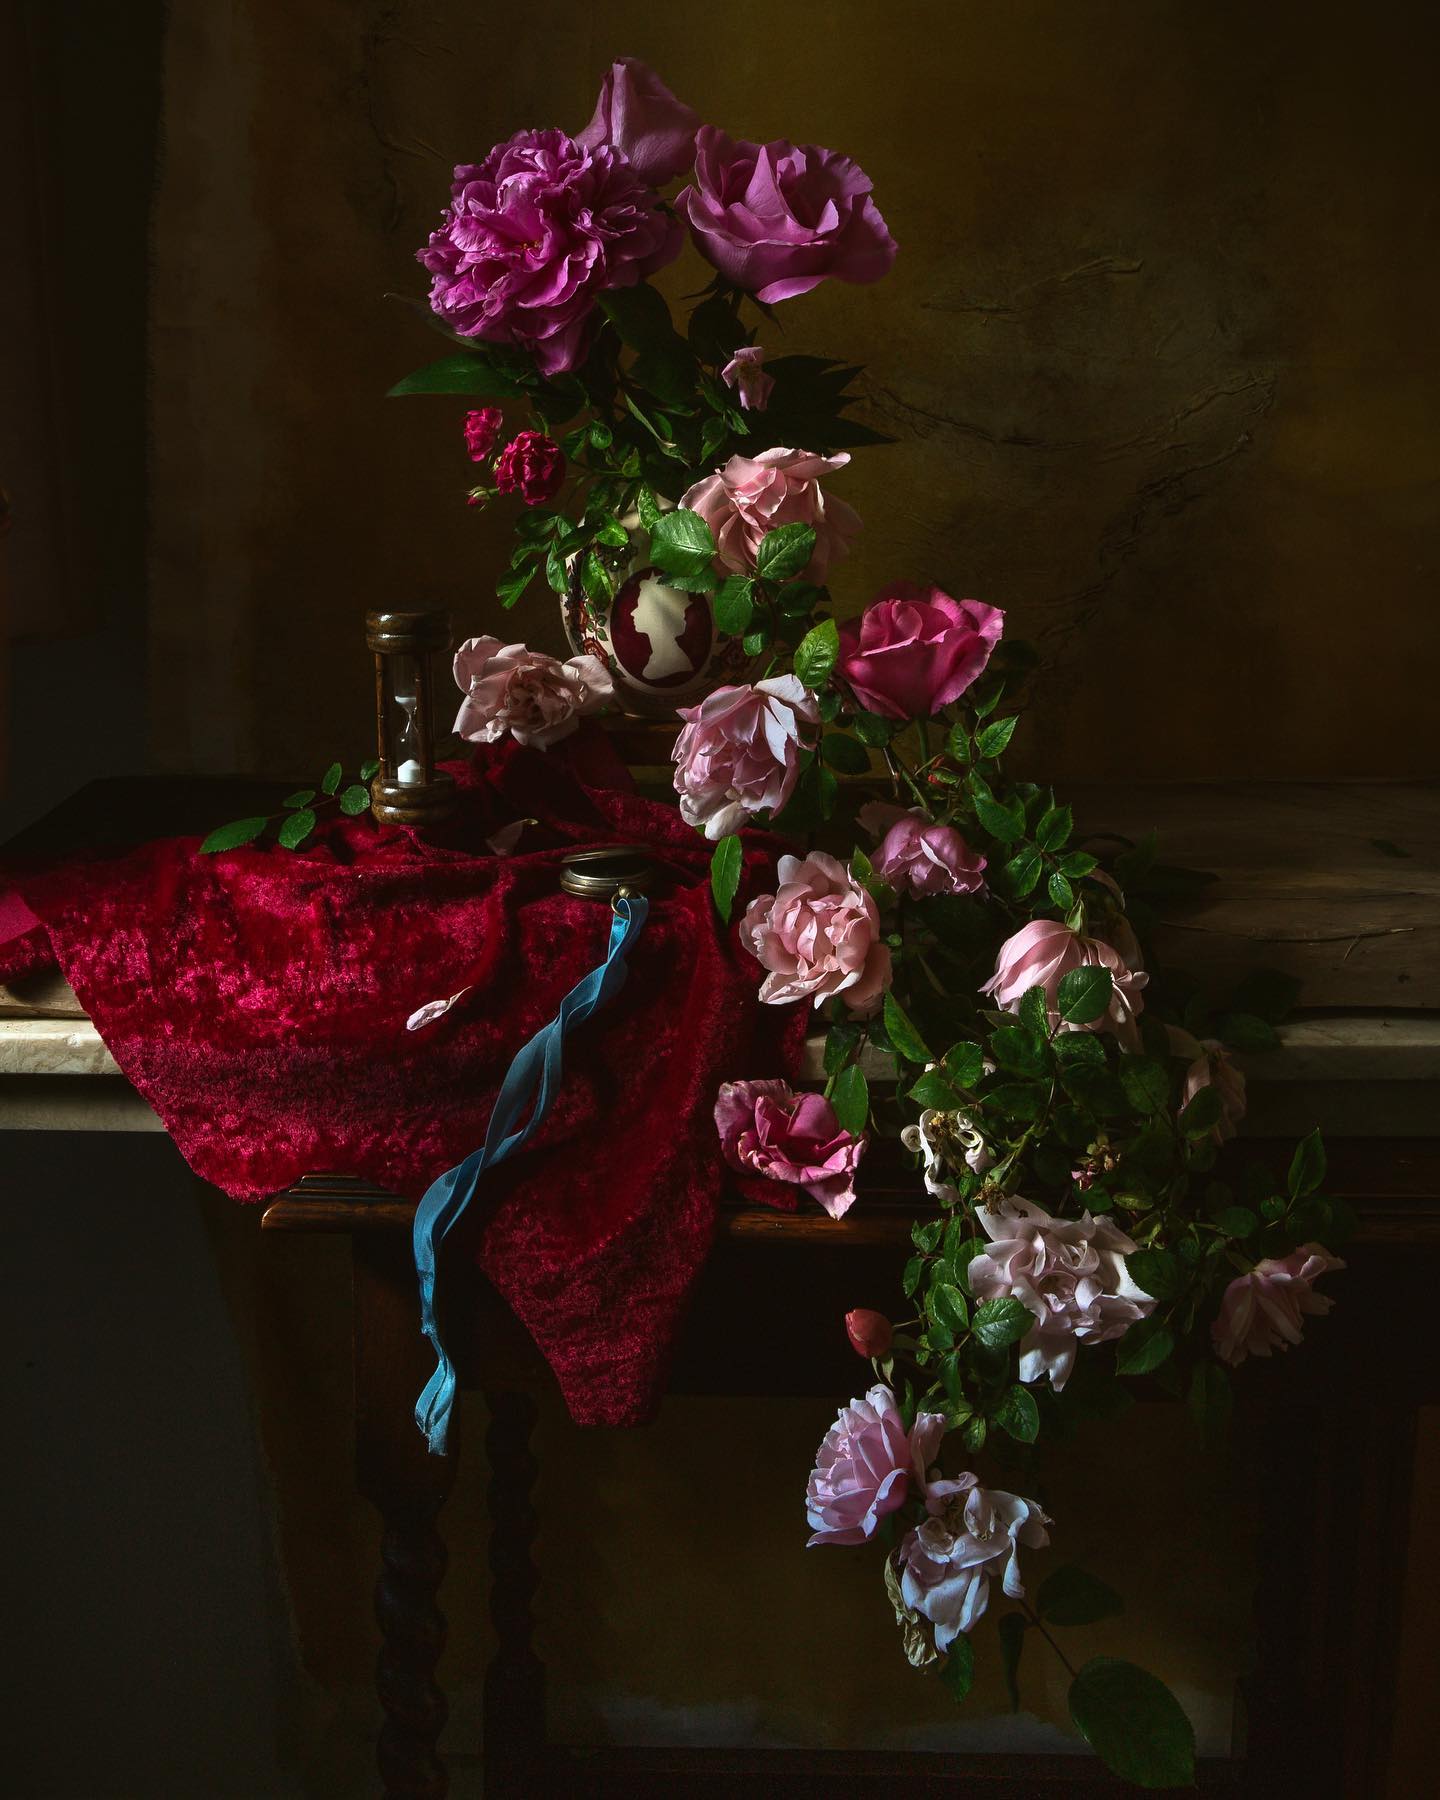 Still Life:
A Train of Royal Roses 🥀 

#dutchmastersinspired #dutchmasters #dutchmaster #lookslikeapainting #flowerarran